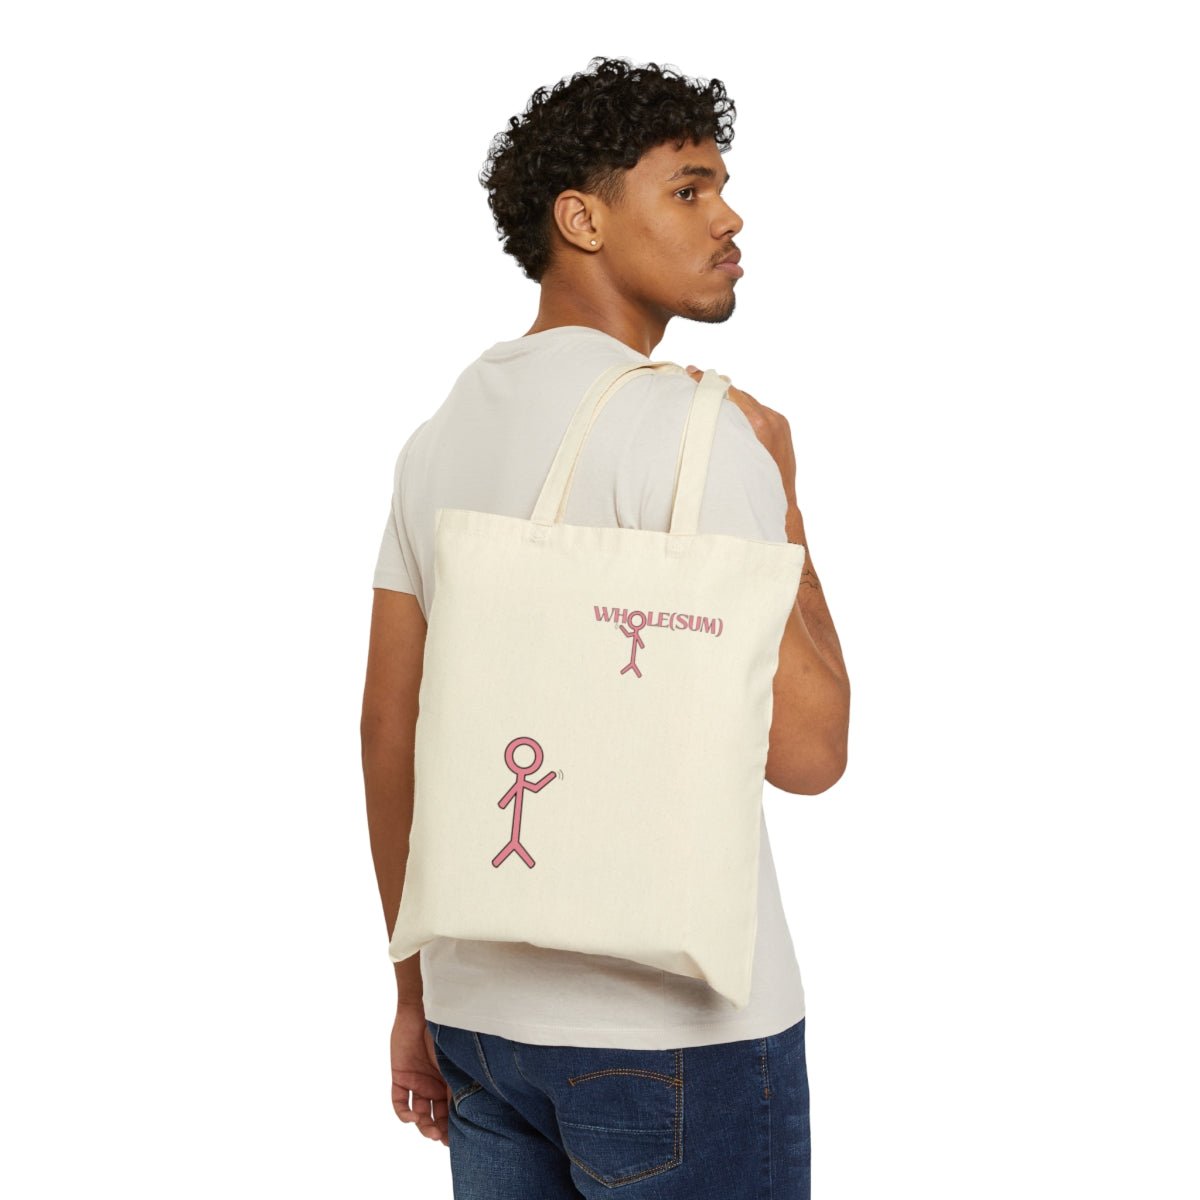 wholesum-wave-tote-bag-held-over-models-shoulder-with-stick-figure-design-showing